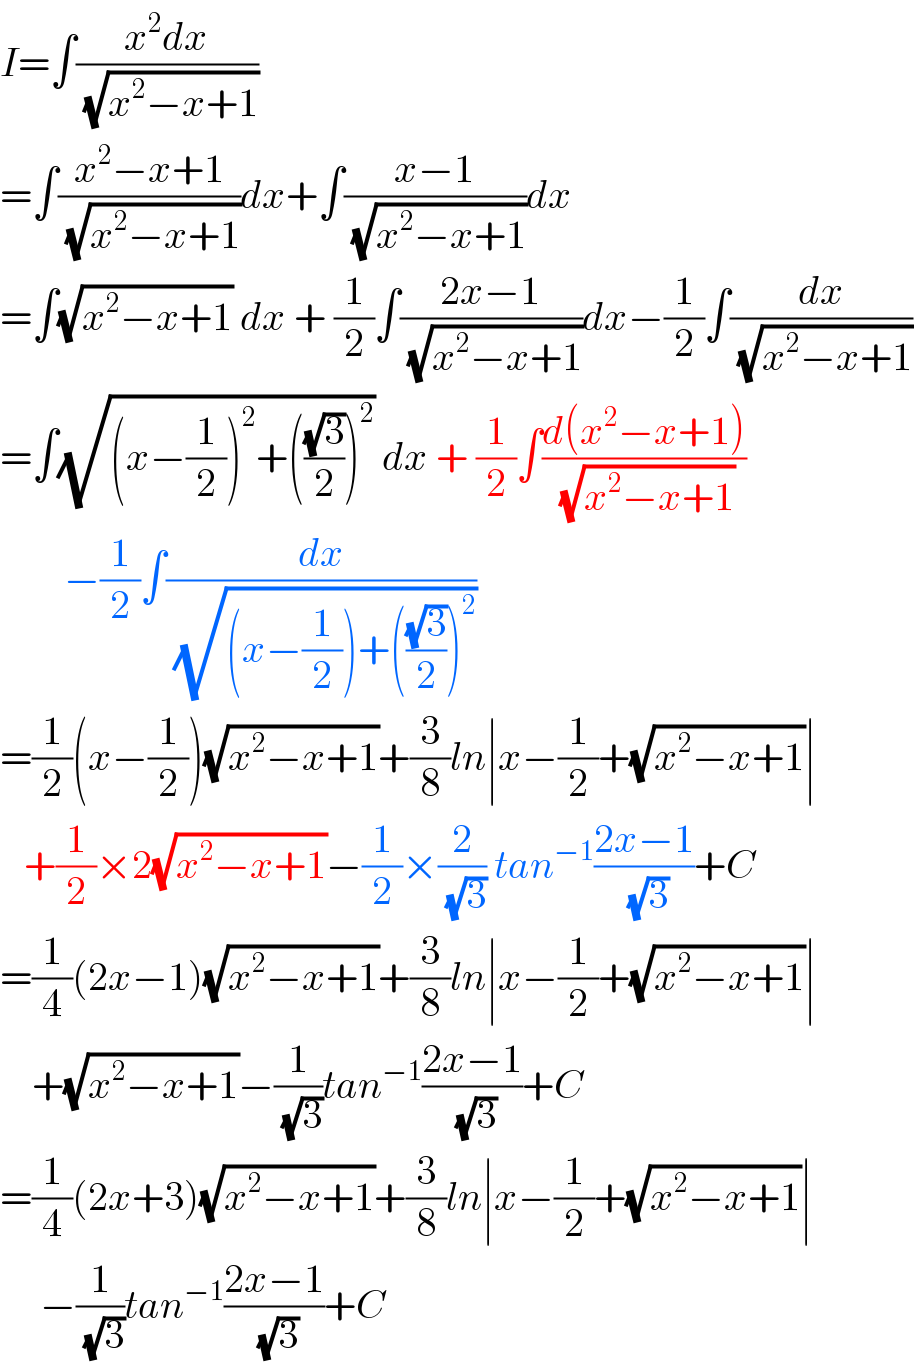 I=∫((x^2 dx)/(√(x^2 −x+1)))  =∫((x^2 −x+1)/(√(x^2 −x+1)))dx+∫((x−1)/(√(x^2 −x+1)))dx  =∫(√(x^2 −x+1)) dx + (1/2)∫((2x−1)/(√(x^2 −x+1)))dx−(1/2)∫(dx/(√(x^2 −x+1)))  =∫(√((x−(1/2))^2 +(((√3)/2))^2 )) dx + (1/2)∫((d(x^2 −x+1))/(√(x^2 −x+1)))          −(1/2)∫(dx/(√((x−(1/2))+(((√3)/2))^2 )))  =(1/2)(x−(1/2))(√(x^2 −x+1))+(3/8)ln∣x−(1/2)+(√(x^2 −x+1))∣     +(1/2)×2(√(x^2 −x+1))−(1/2)×(2/(√3)) tan^(−1) ((2x−1)/(√3))+C  =(1/4)(2x−1)(√(x^2 −x+1))+(3/8)ln∣x−(1/2)+(√(x^2 −x+1))∣      +(√(x^2 −x+1))−(1/(√3))tan^(−1) ((2x−1)/(√3))+C  =(1/4)(2x+3)(√(x^2 −x+1))+(3/8)ln∣x−(1/2)+(√(x^2 −x+1))∣       −(1/(√3))tan^(−1) ((2x−1)/(√3))+C  